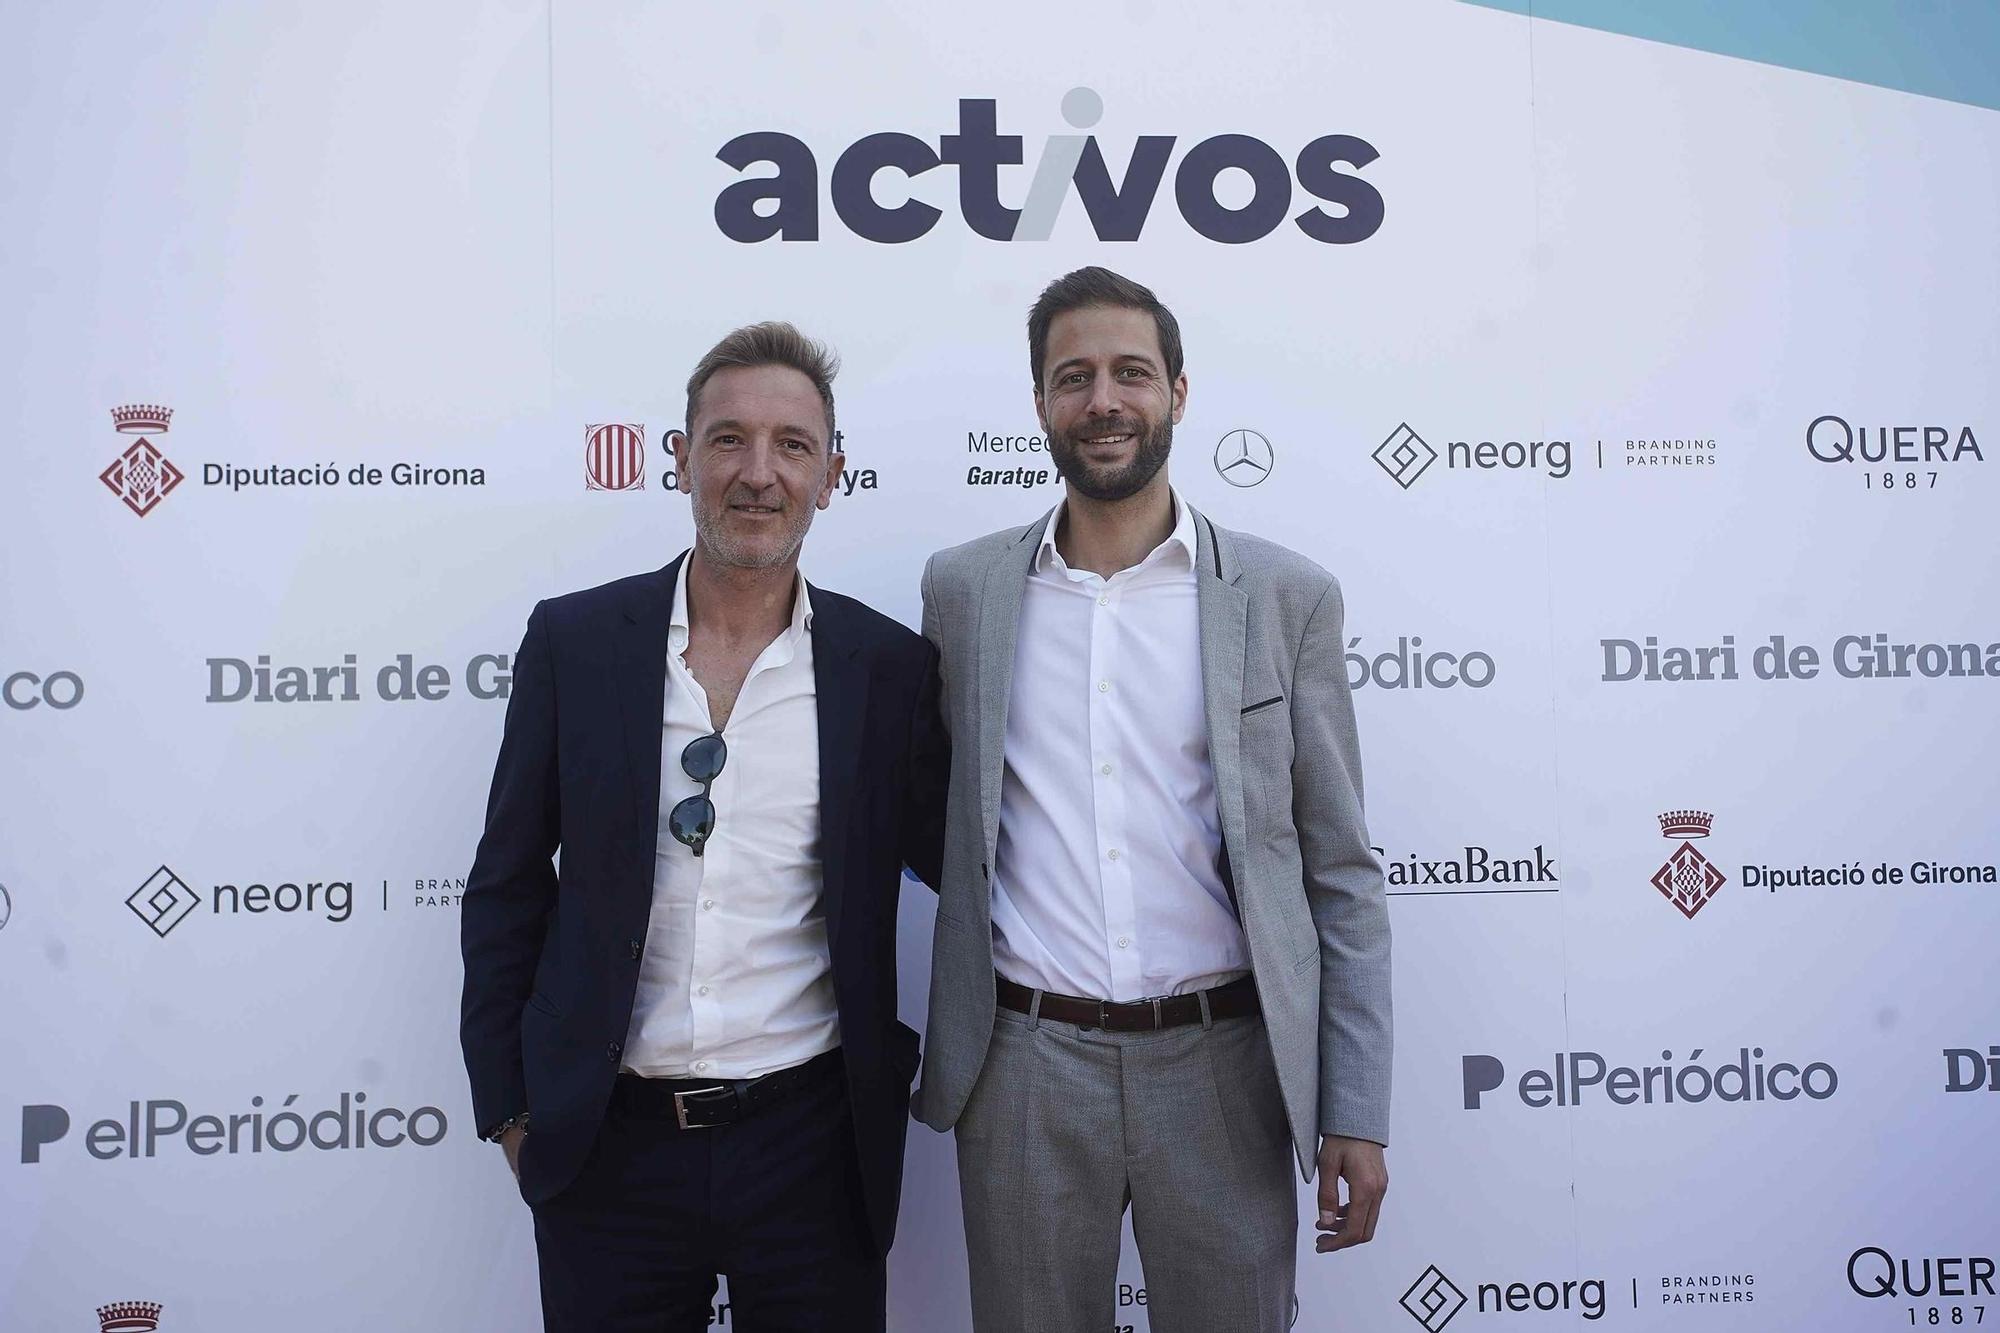 Presentació de la publicació econòmica 'actius' a Girona